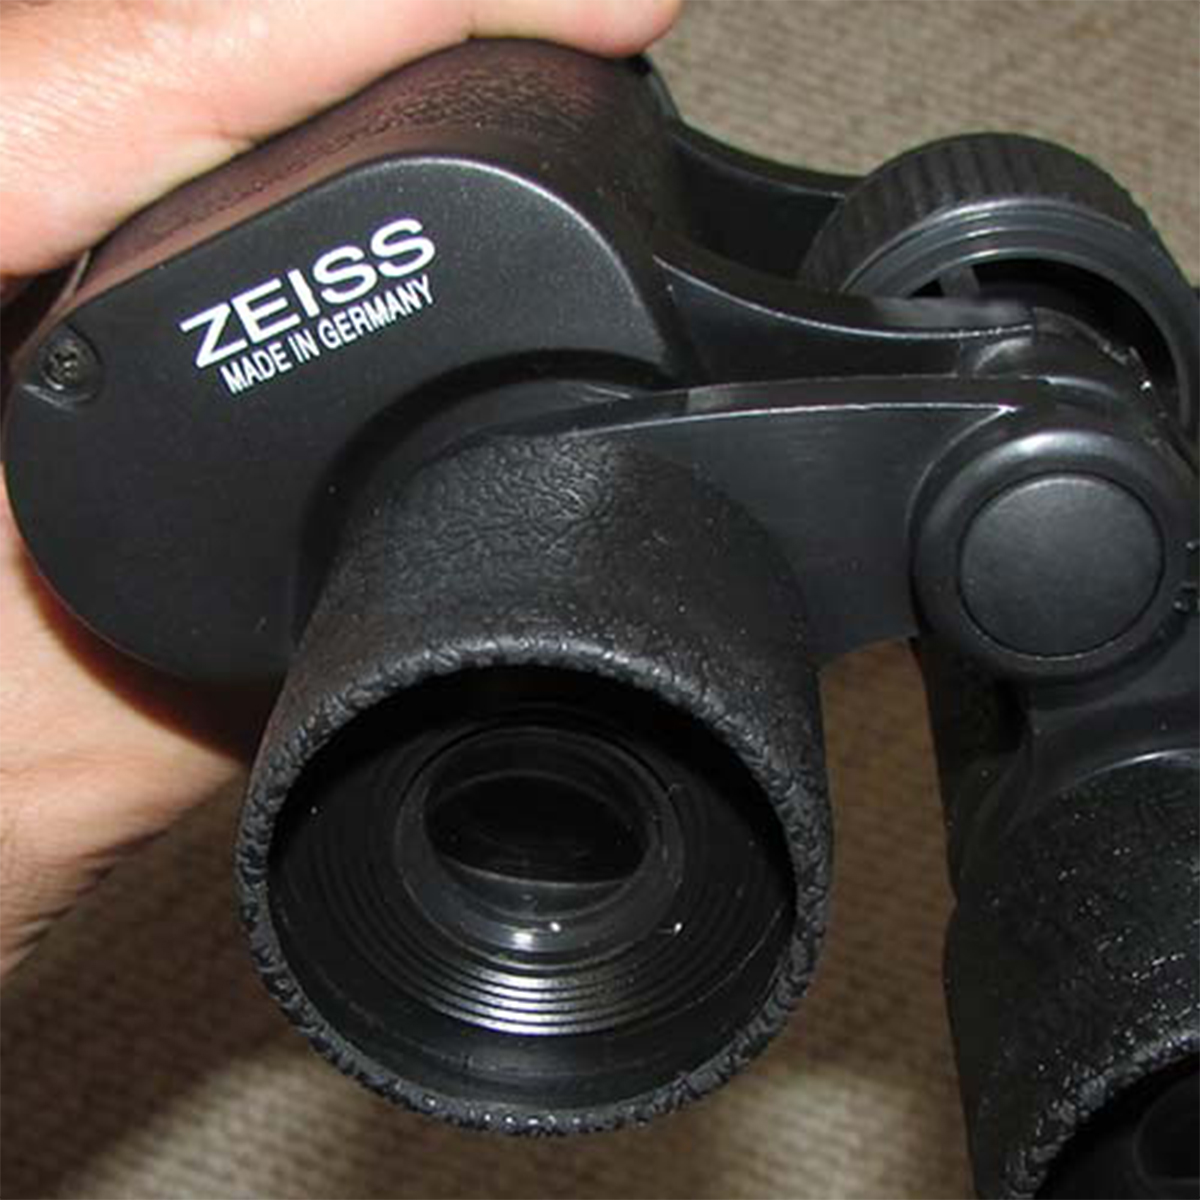 دوربین دوچشمی زایس مدل 2060